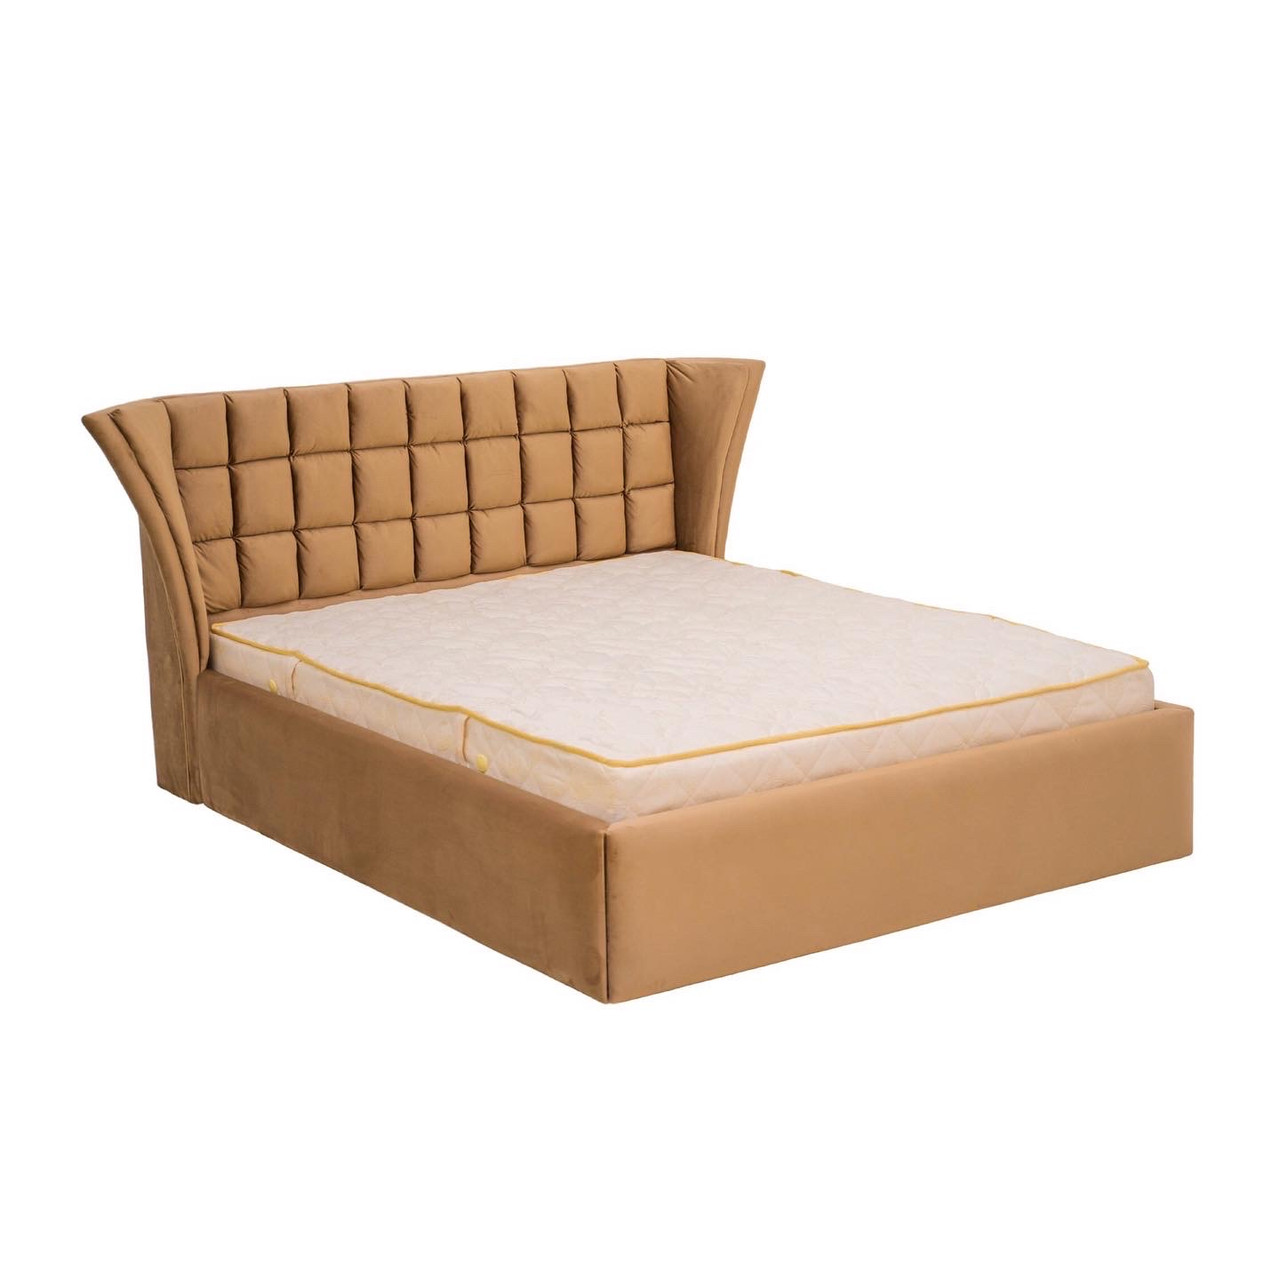 Ліжко двоспальне з м'яким узголів'ям MeBelle ASSAI 180х200 см з ламеллю, кава з молоком коричневий велюр